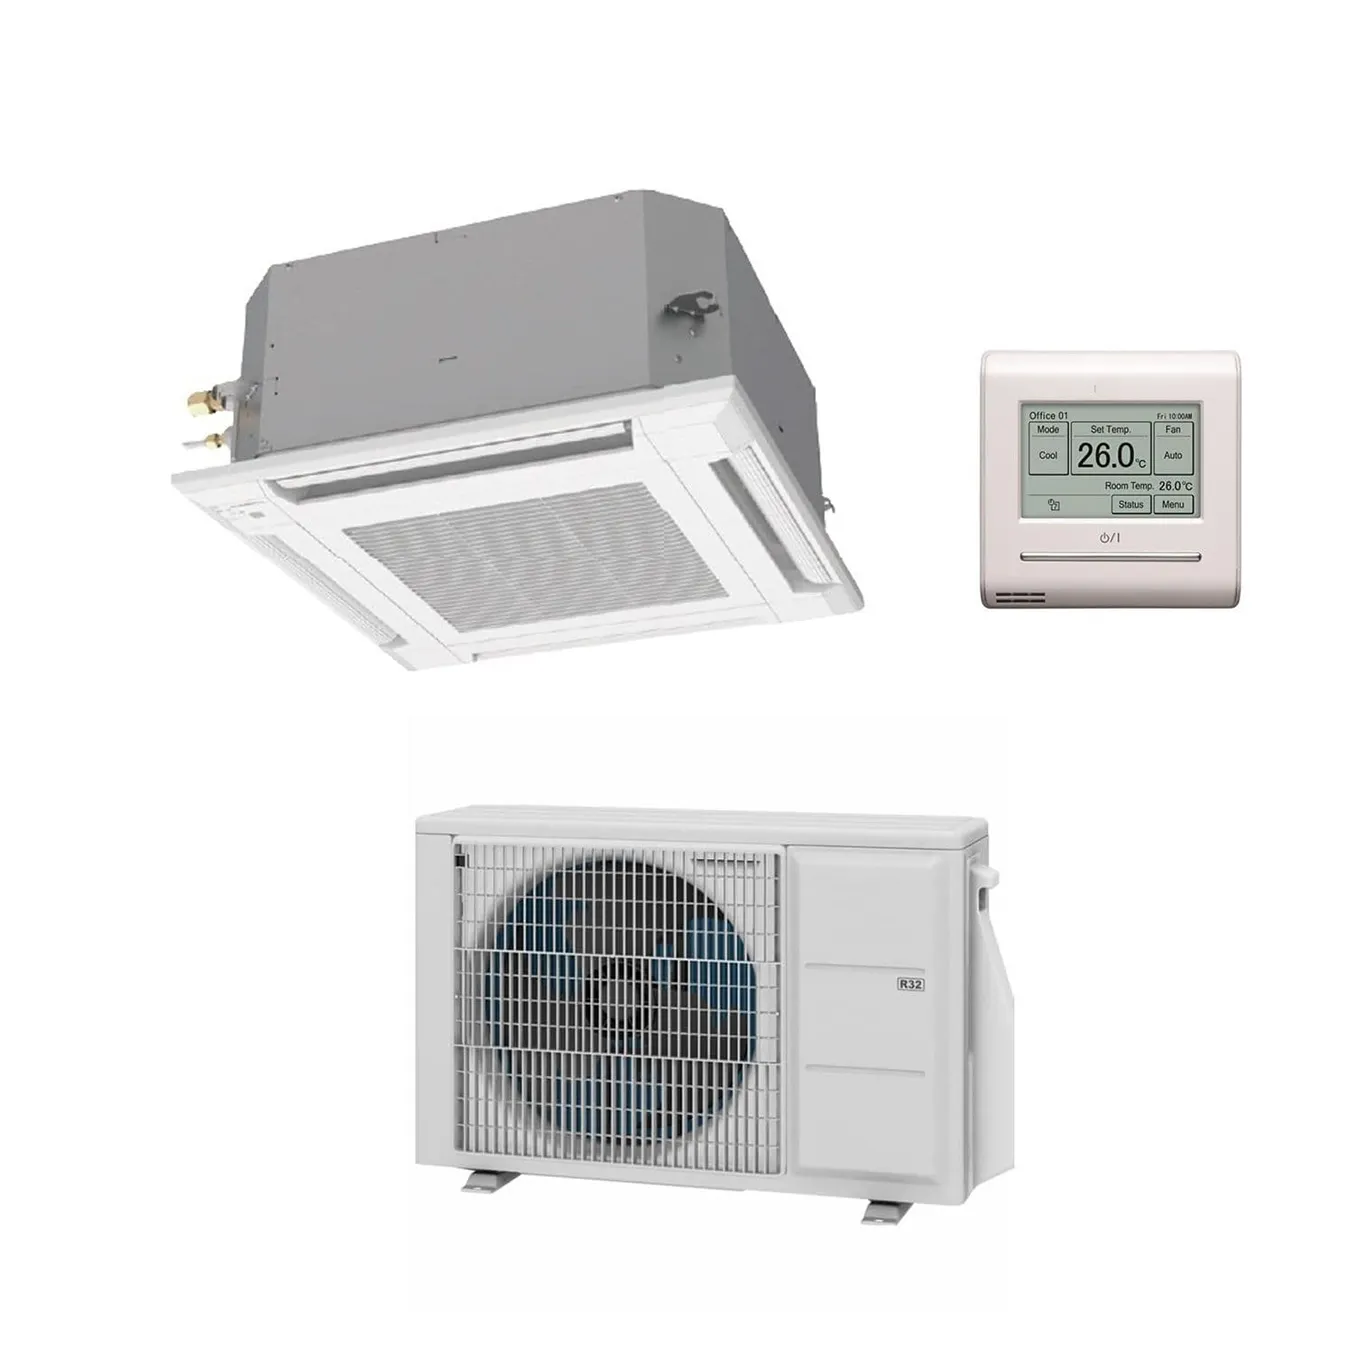 Commerciale VRV VRF multi Connect sistemi HVAC centralizzata condizionatore d'aria ventilare unità